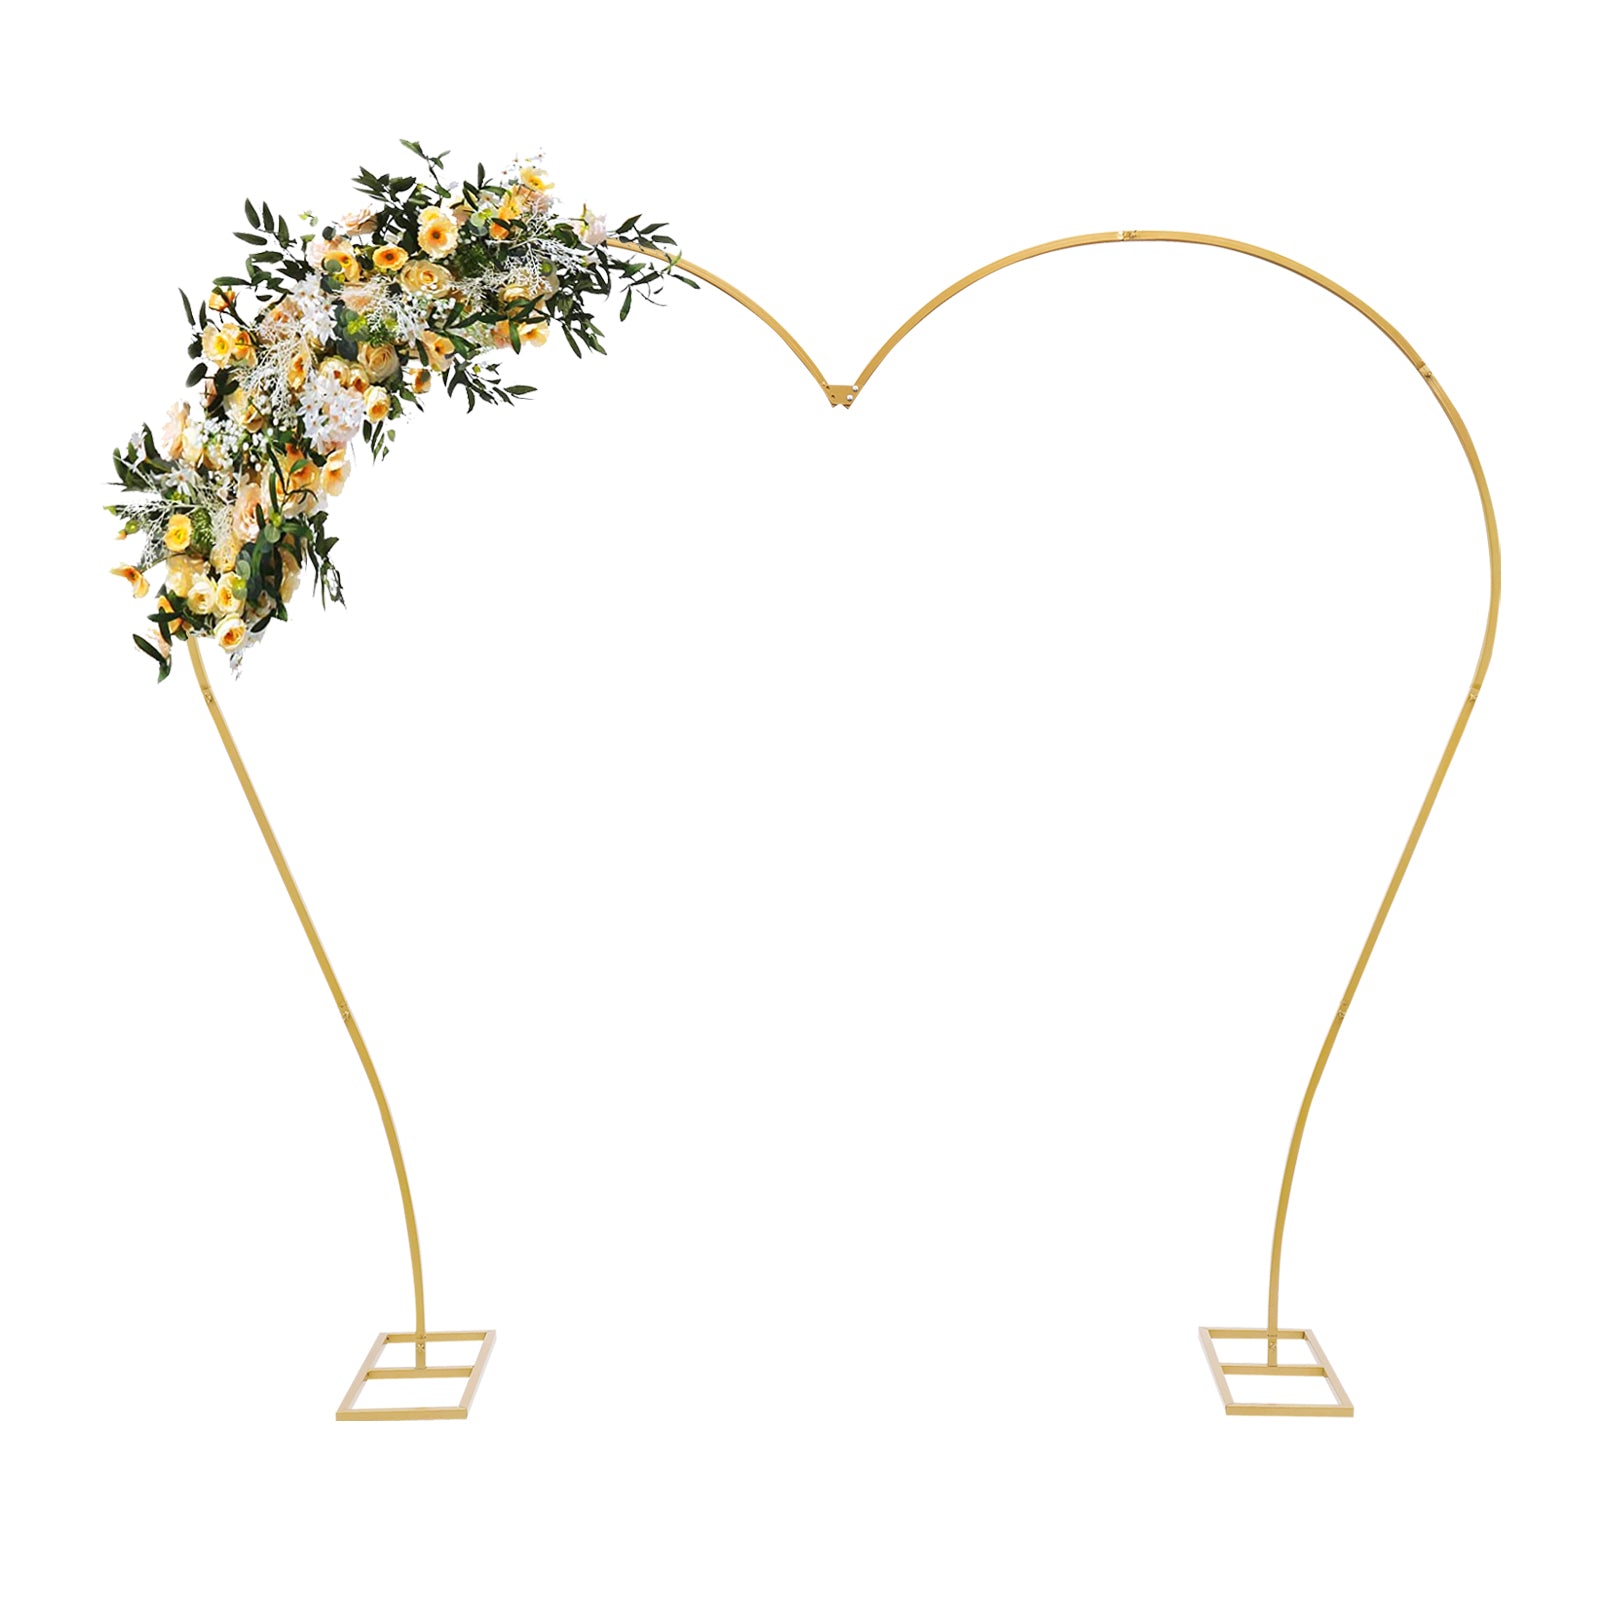 Arche de mariage - En métal - Fond en forme de cœur - Pour ballons